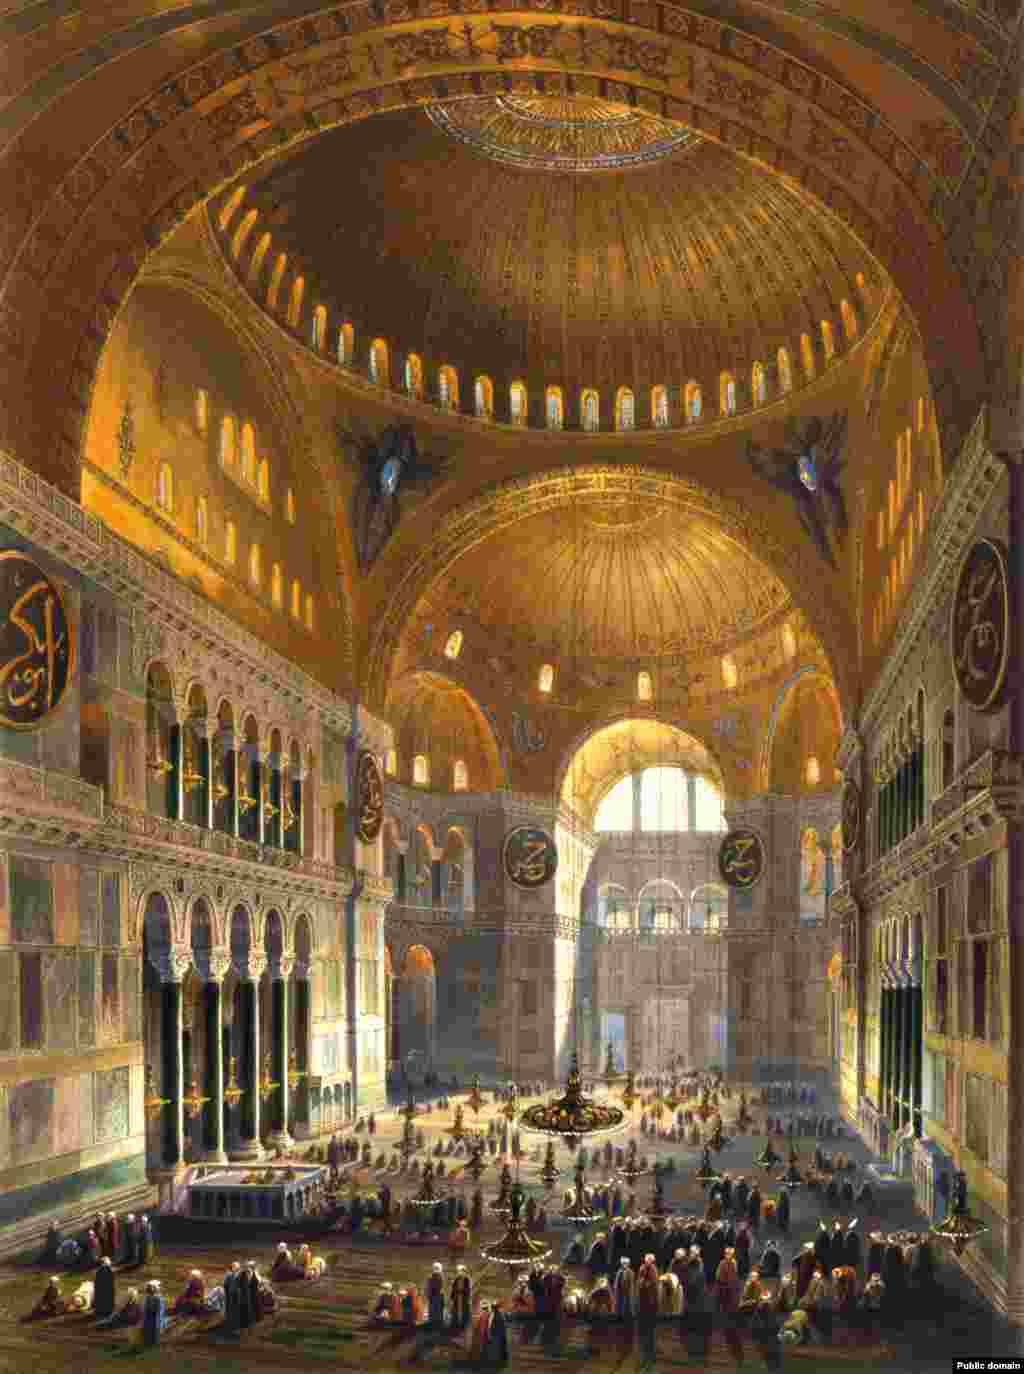 Ілюстрація&nbsp; датована 1852 роком: мусульмани моляться всередині Агії Софії. Майже 500 років собор Святої Софії був діючою мечеттю, а християнська іконографія всередині була або заштукатурена, або знищена